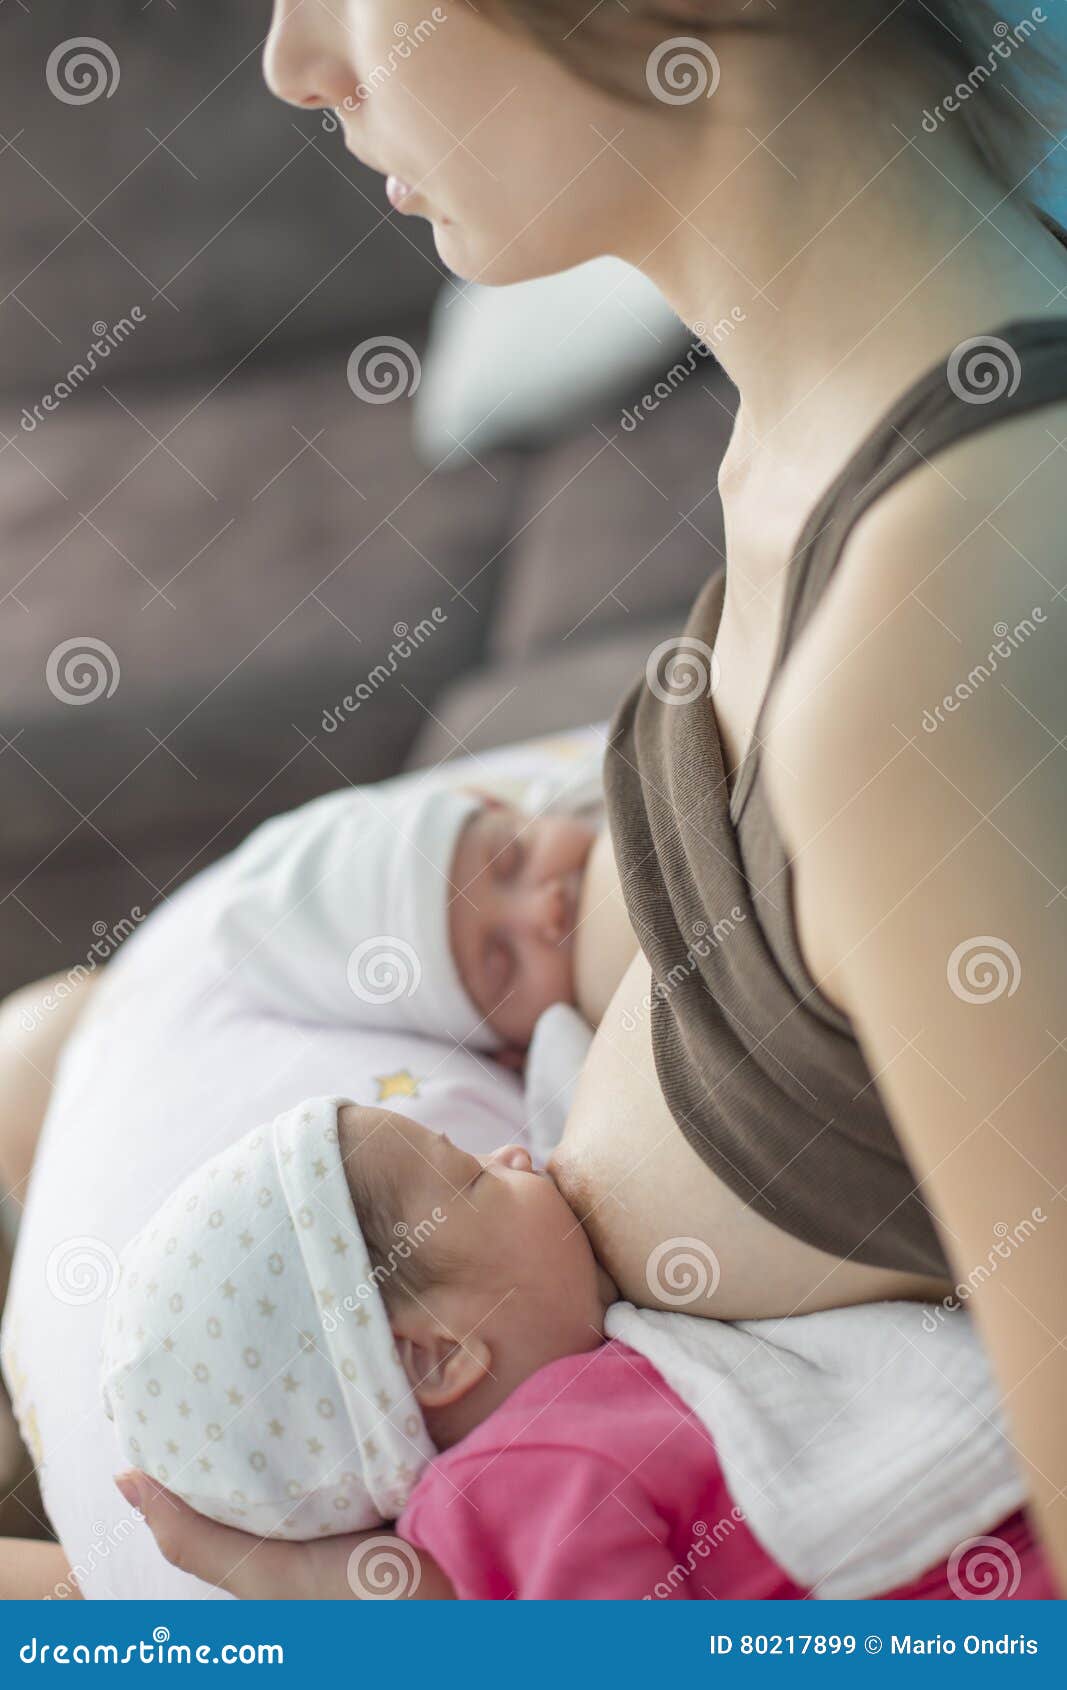 breastfeeding twin babies